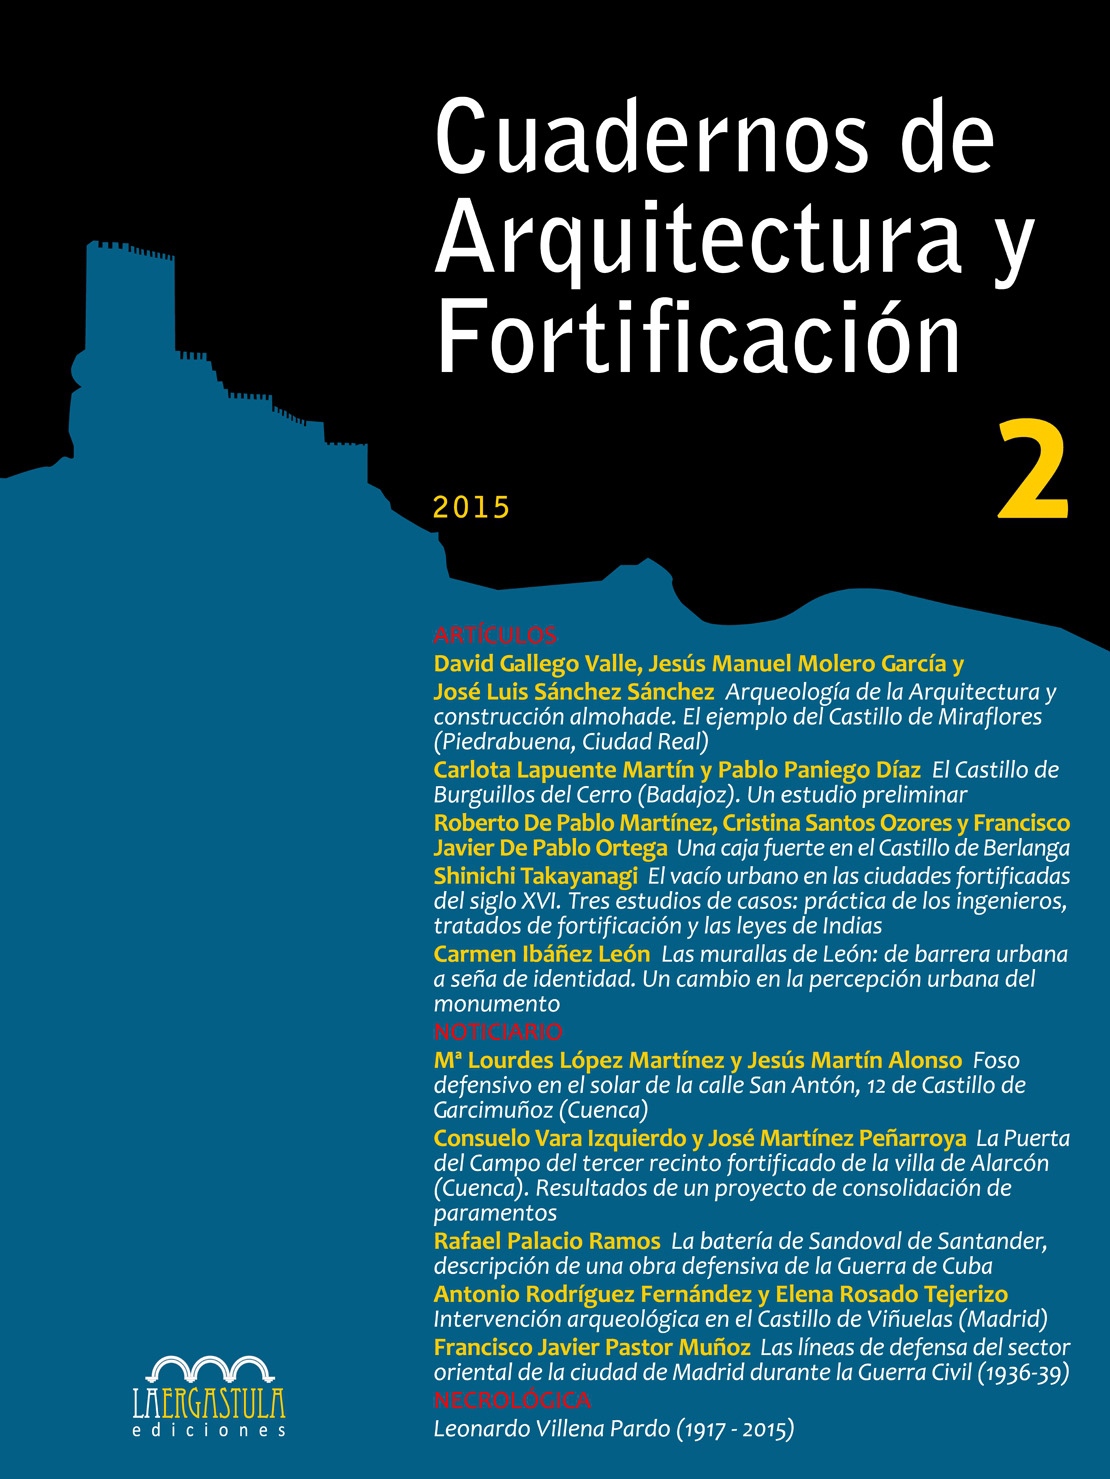 Cuadernos de Arquitectura y Fortificación, Nº 2, año 2015